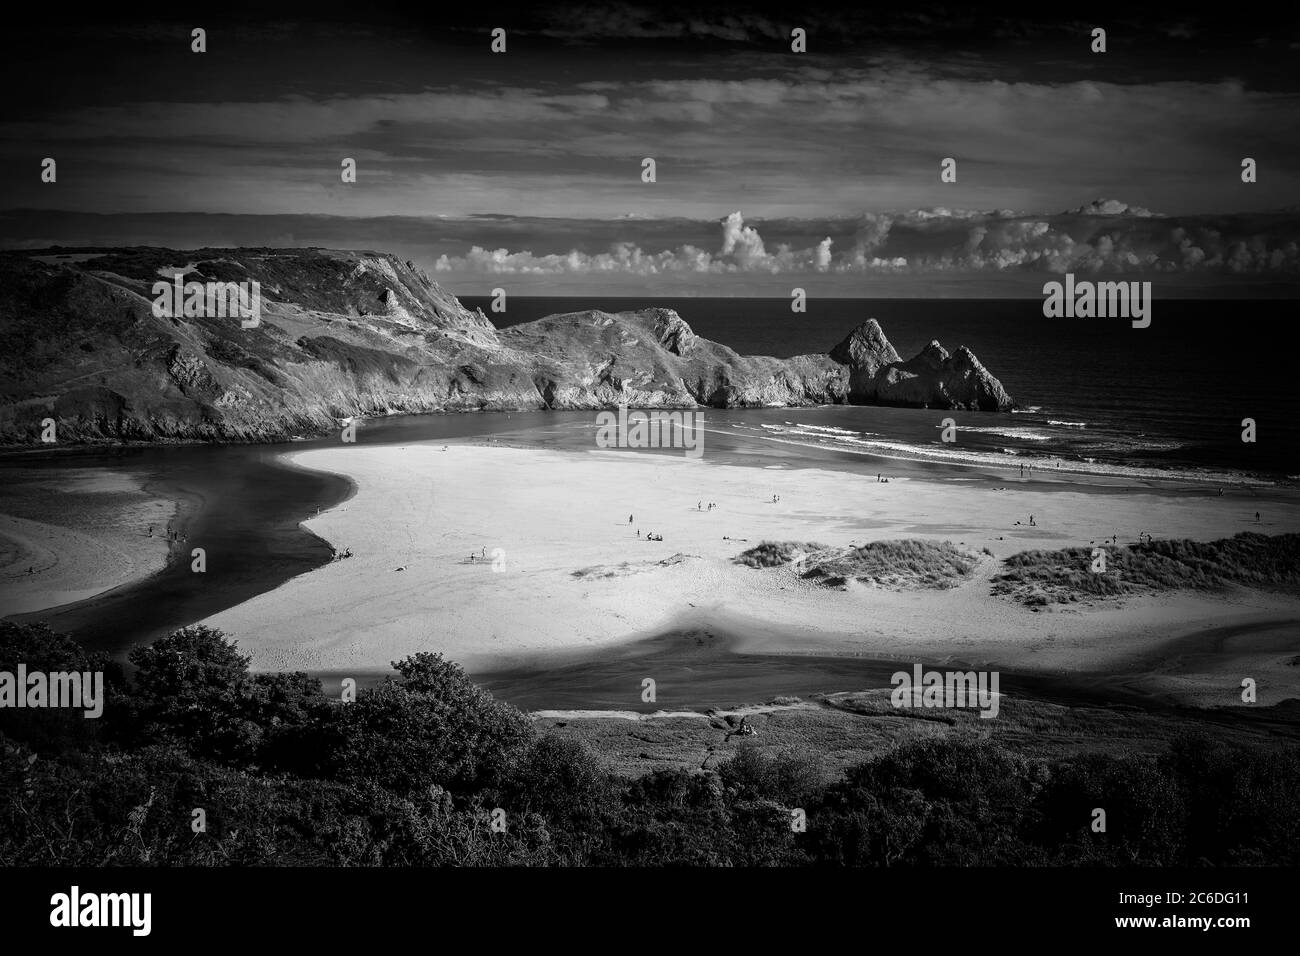 Three Cliffs Bay auf der Gower Peninsula West Glamorgan Wales UK, eine beliebte walisische Küstenattraktion von herausragender Schönheit monochromes Bild Stockfoto